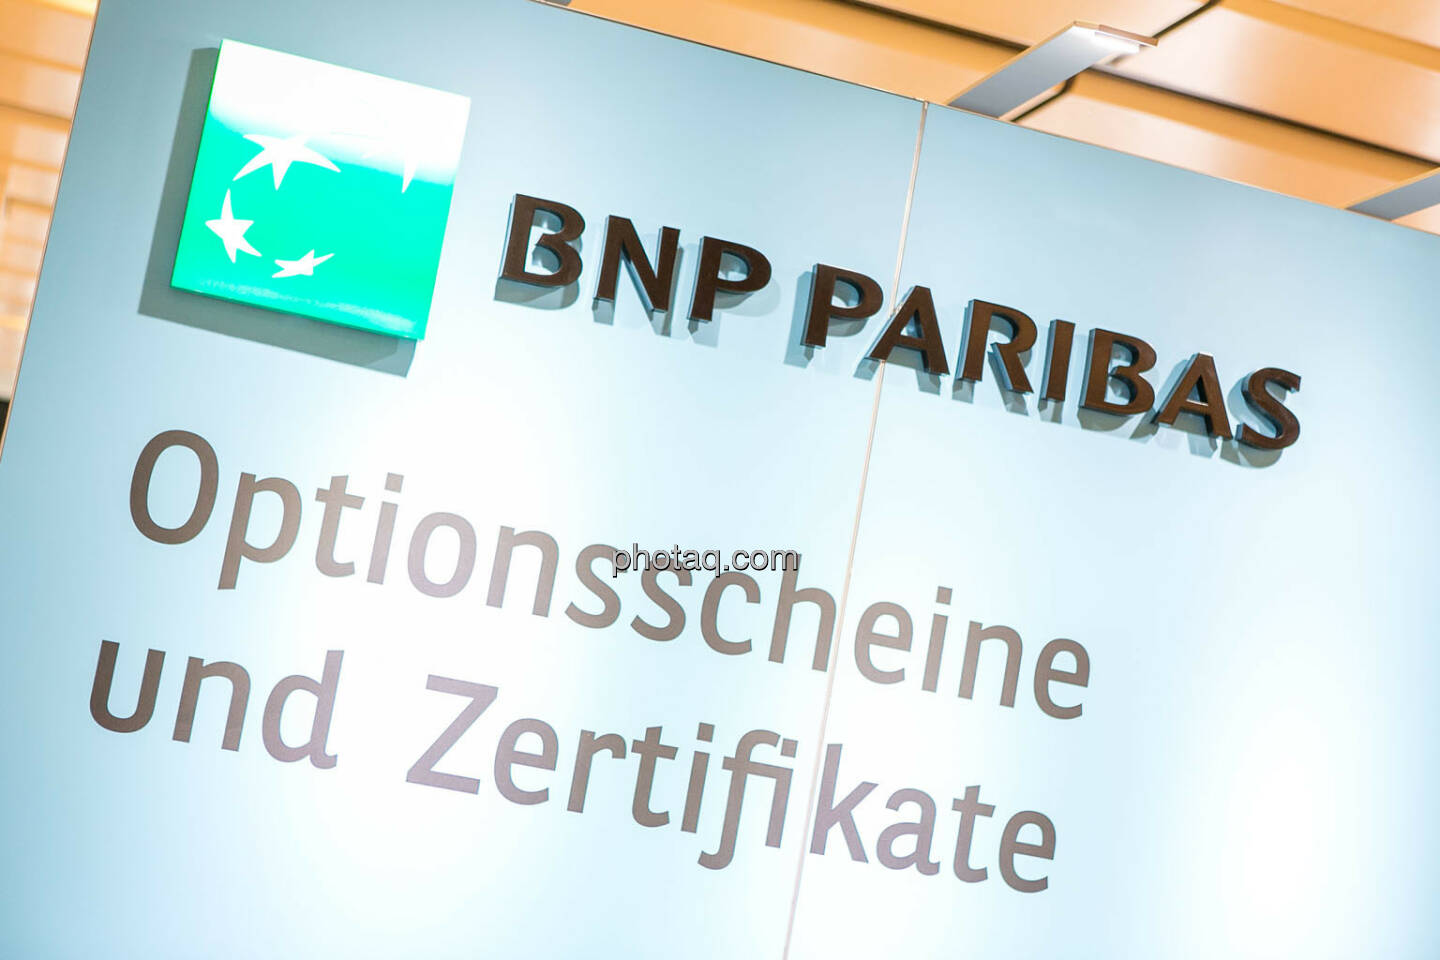 BNP Paribas - Optionsscheine und Zertifikate, Börsentag Wien, 20.5.2017